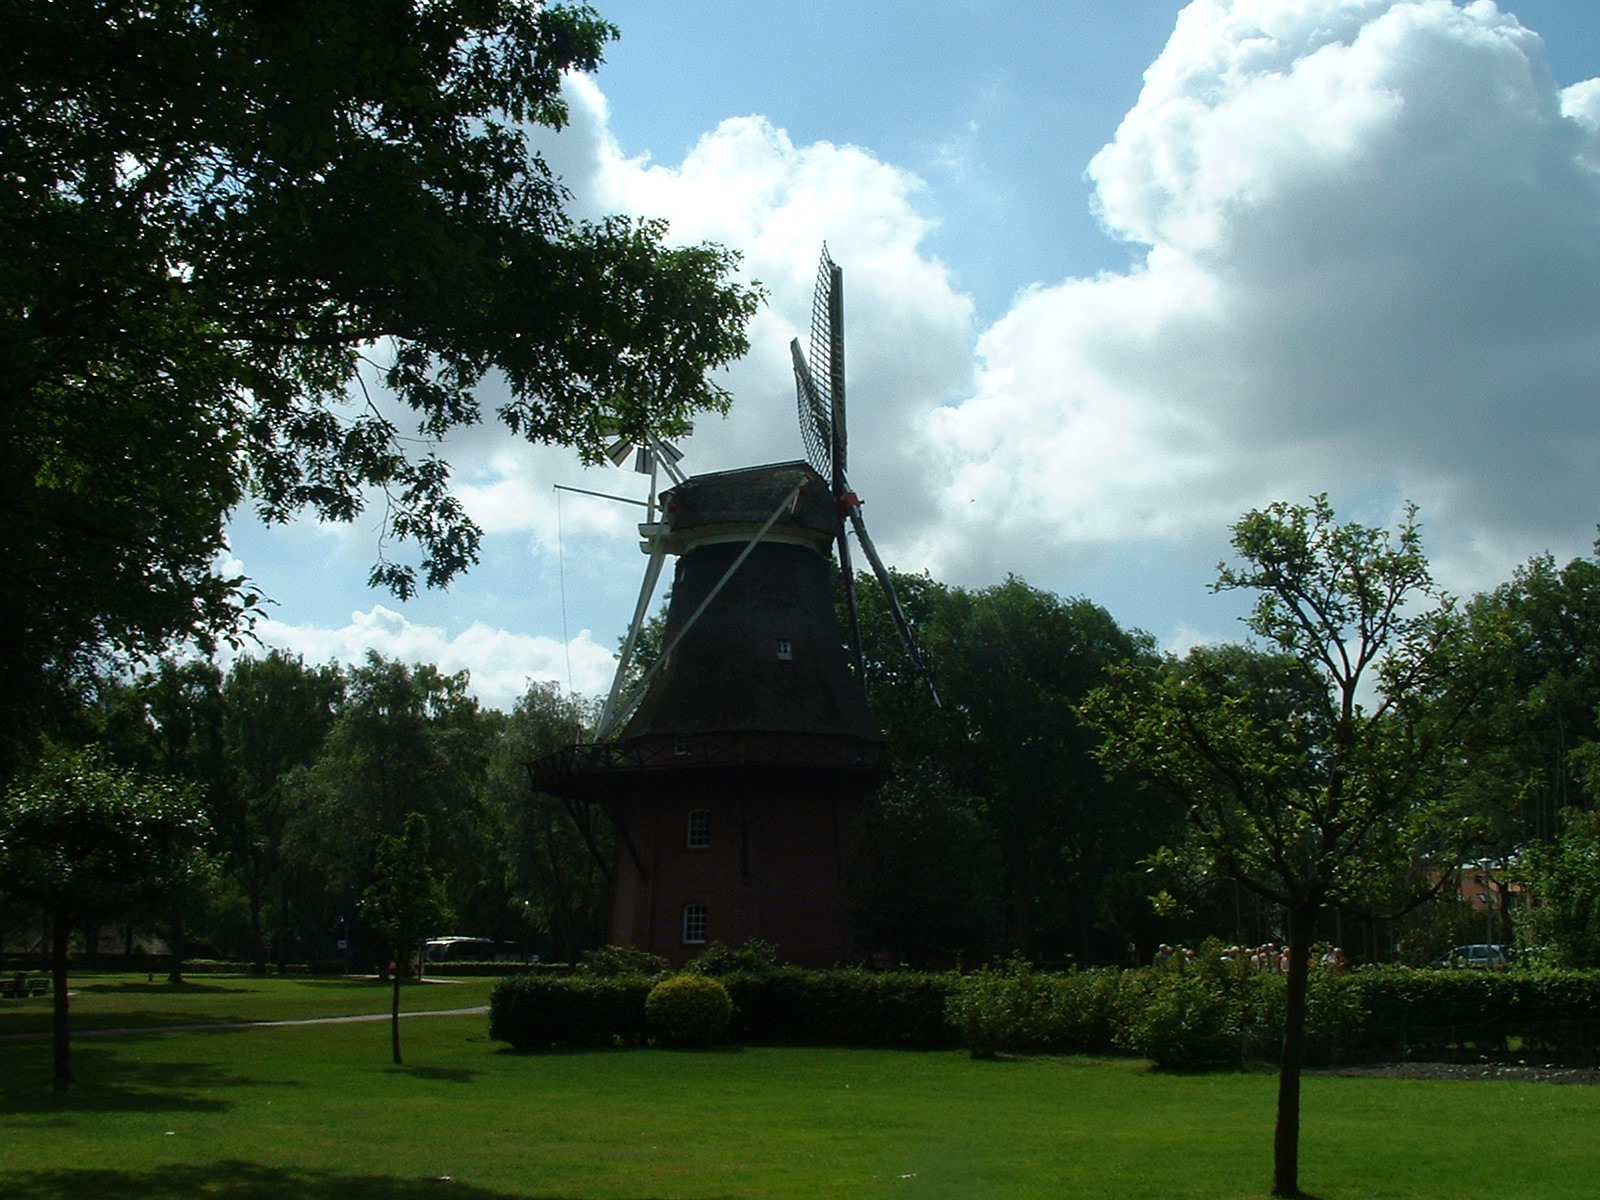 Mühle am Museum Ammerländer Bauernhaus in Bad Zwischenahn